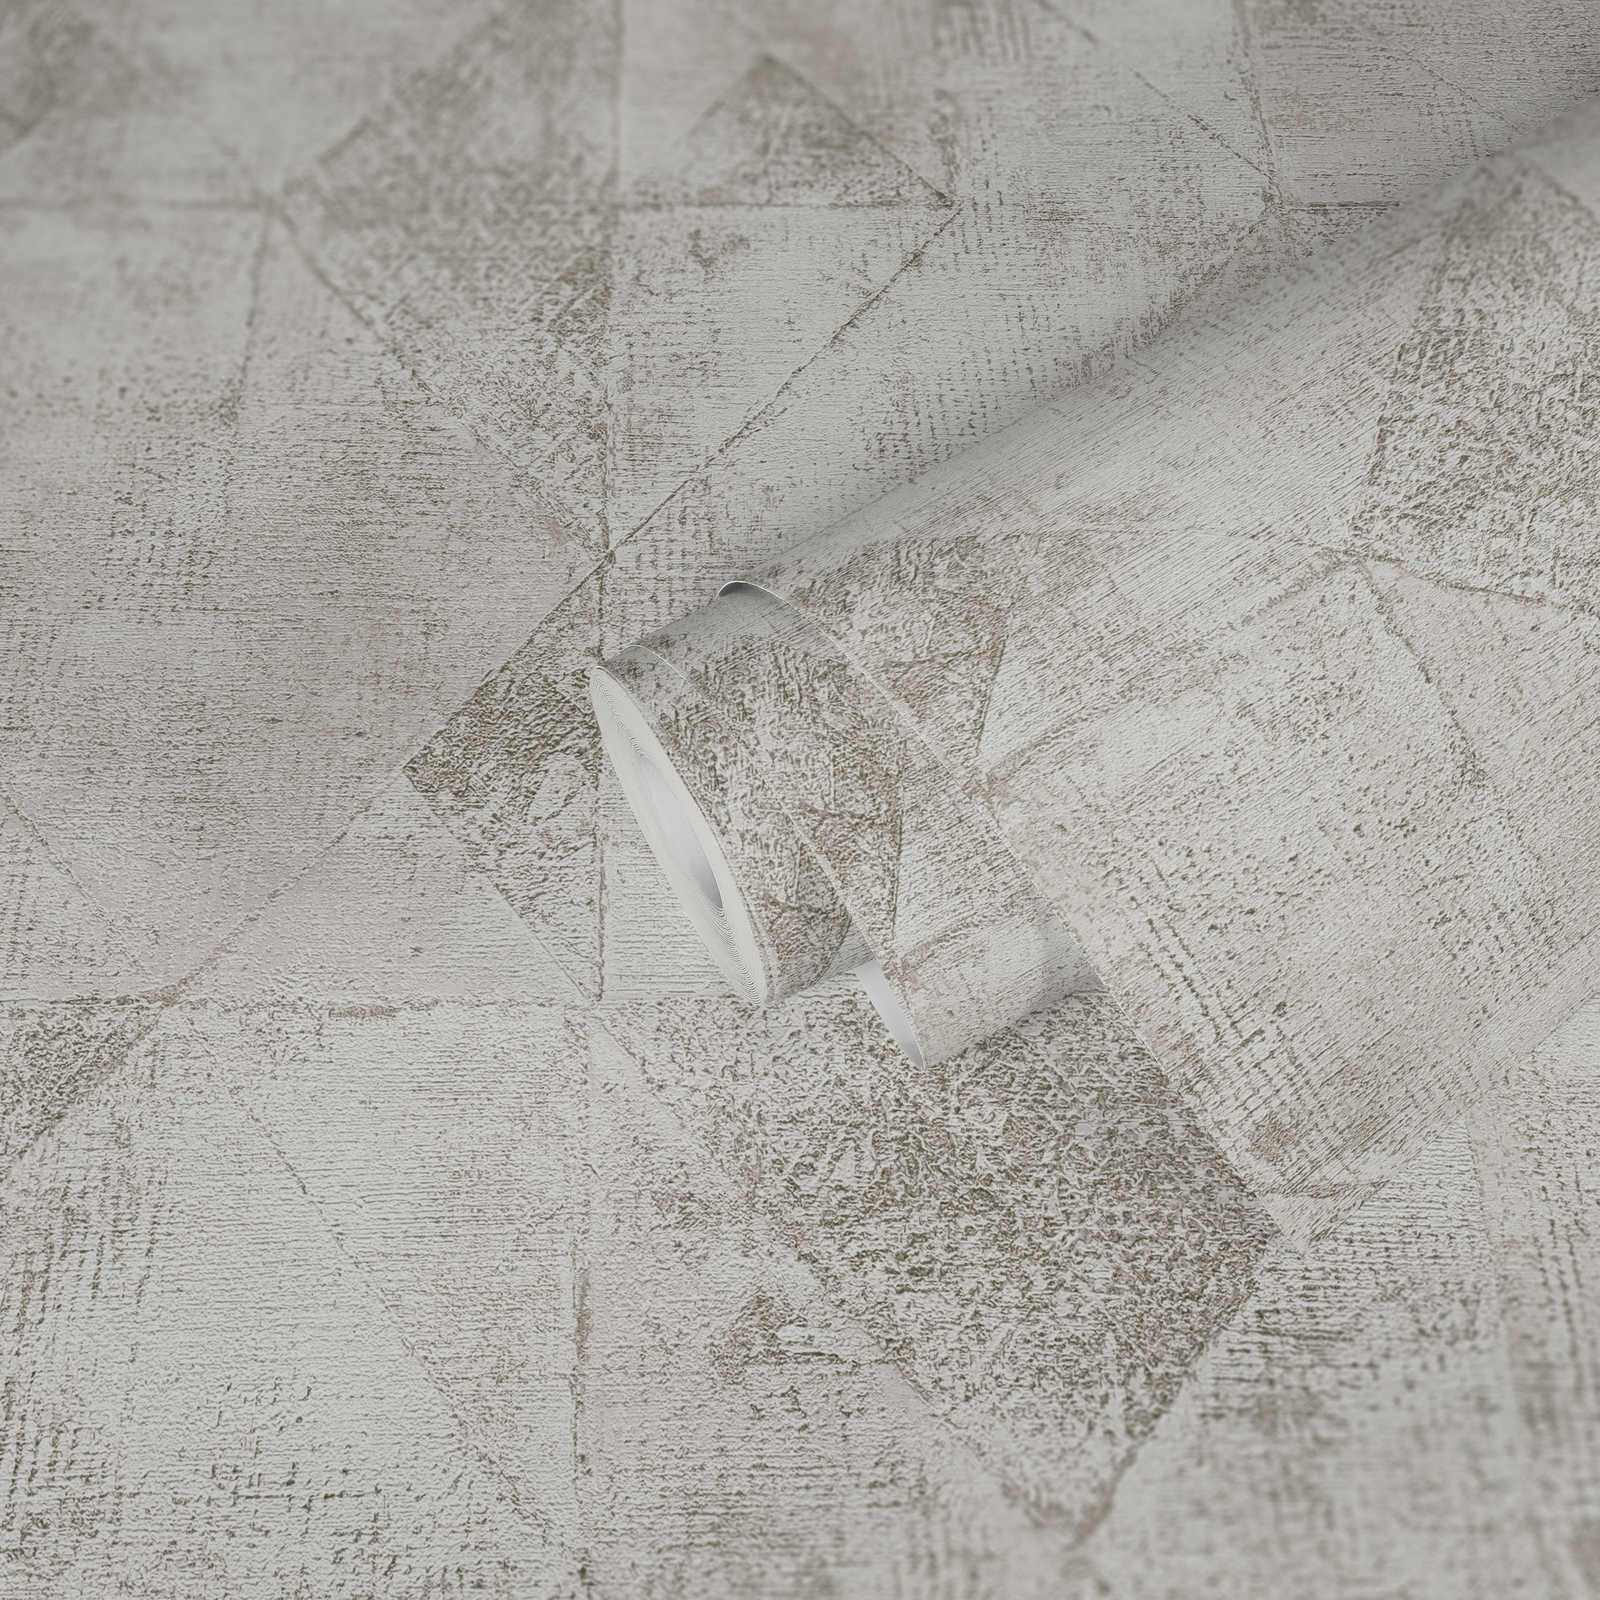             papier peint en papier graphique métallique motif triangulaire brillant structuré - argent, blanc
        